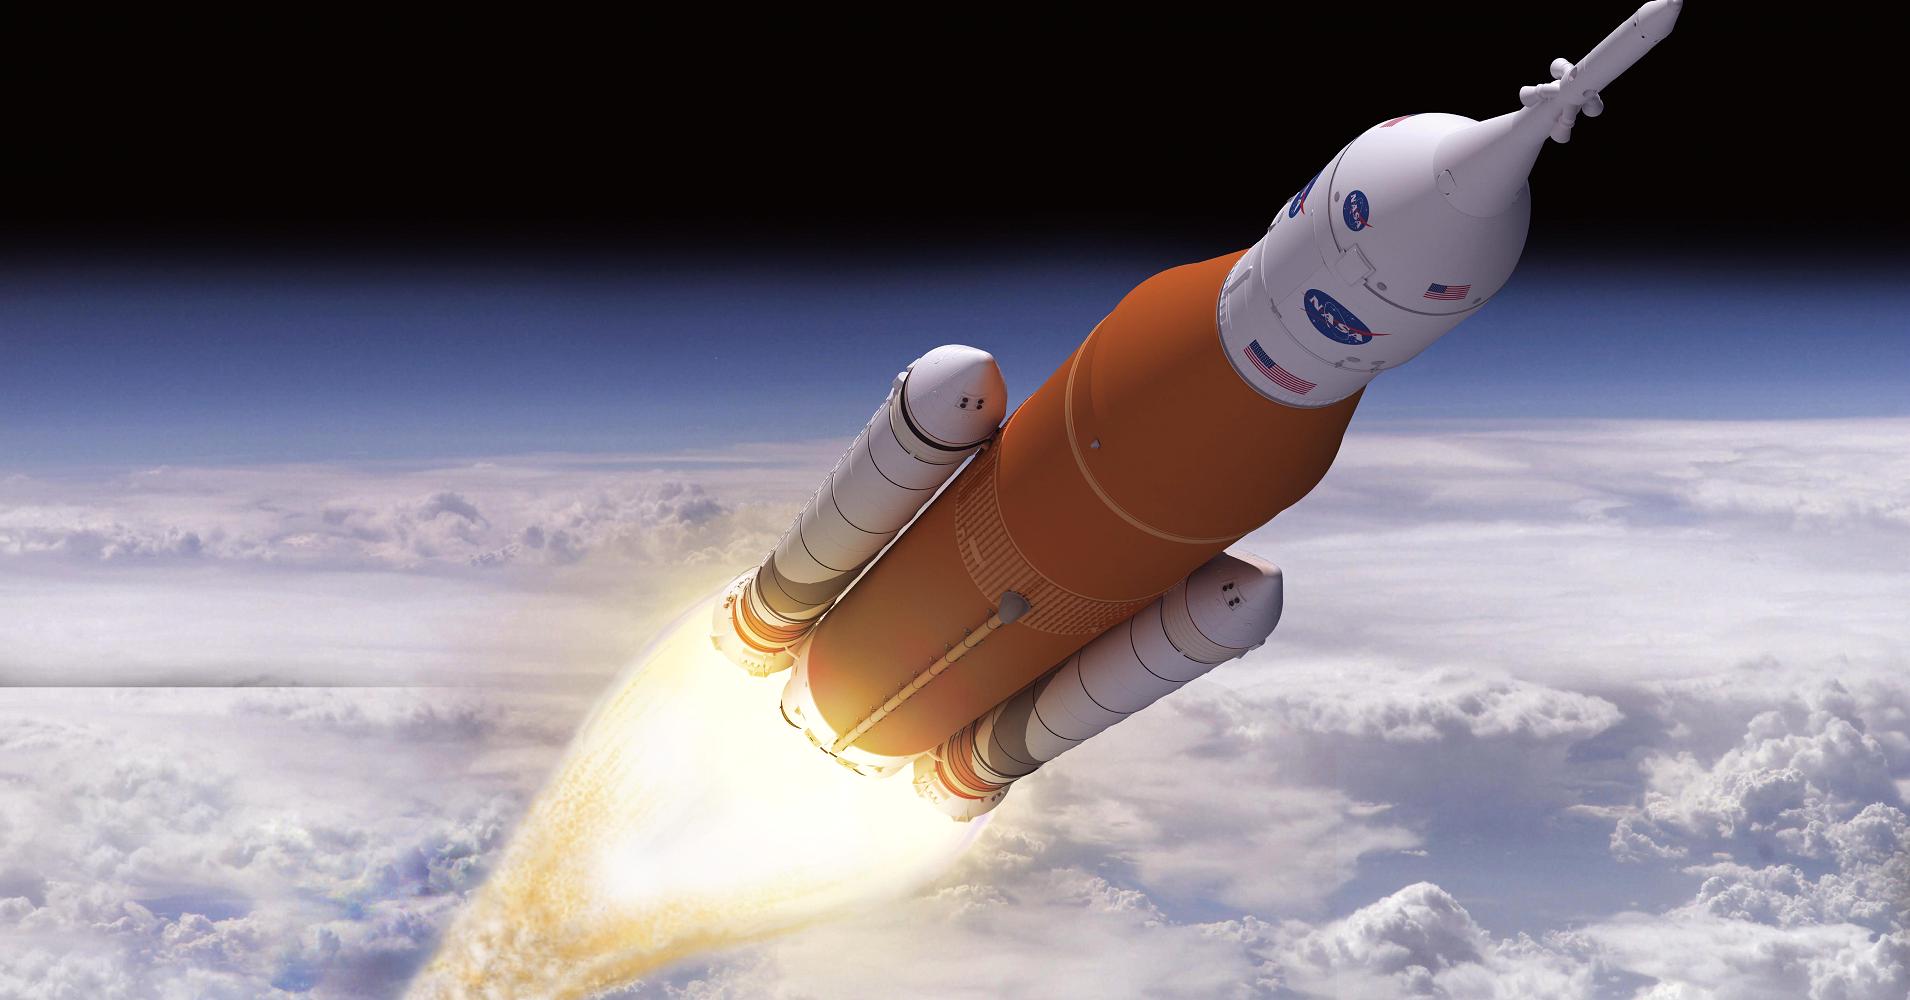 NASA pronto lanzará el cohete más poderoso que se ha construido